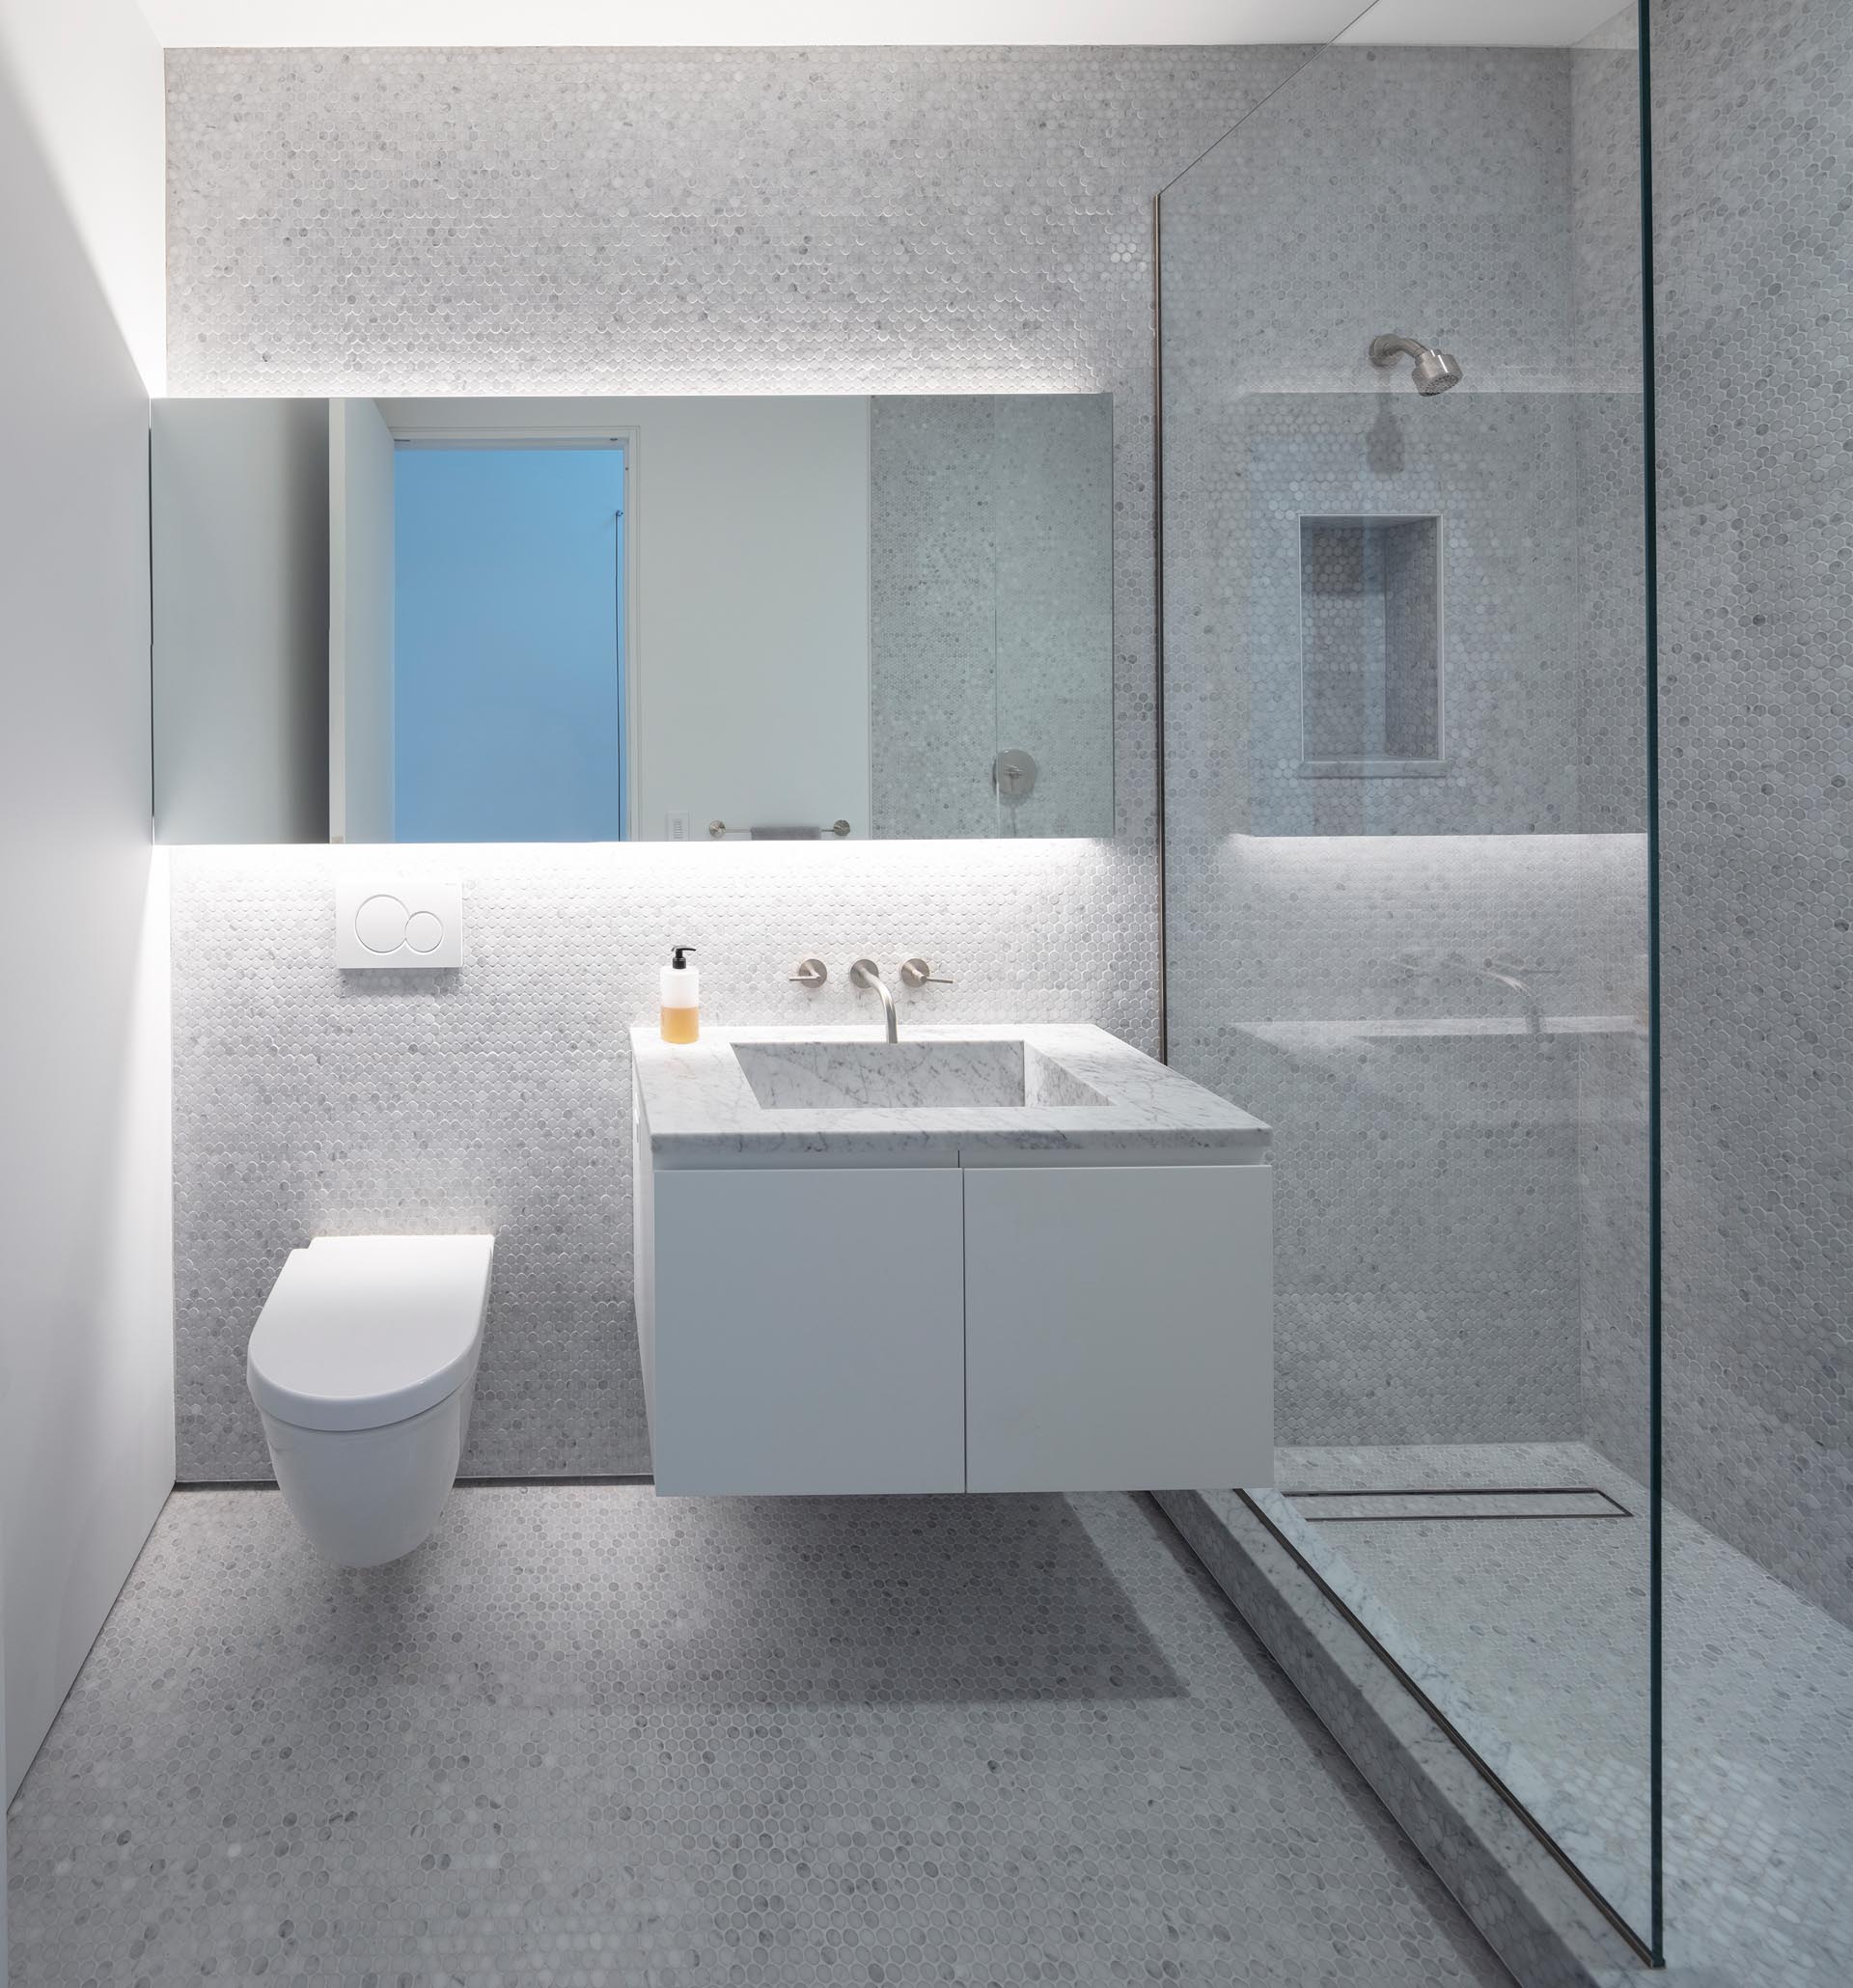 Современная ванная комната с серой плиткой от пола до потолка, стеклянной перегородкой для душа, зеркалом с подсветкой и плавающим туалетным столиком.